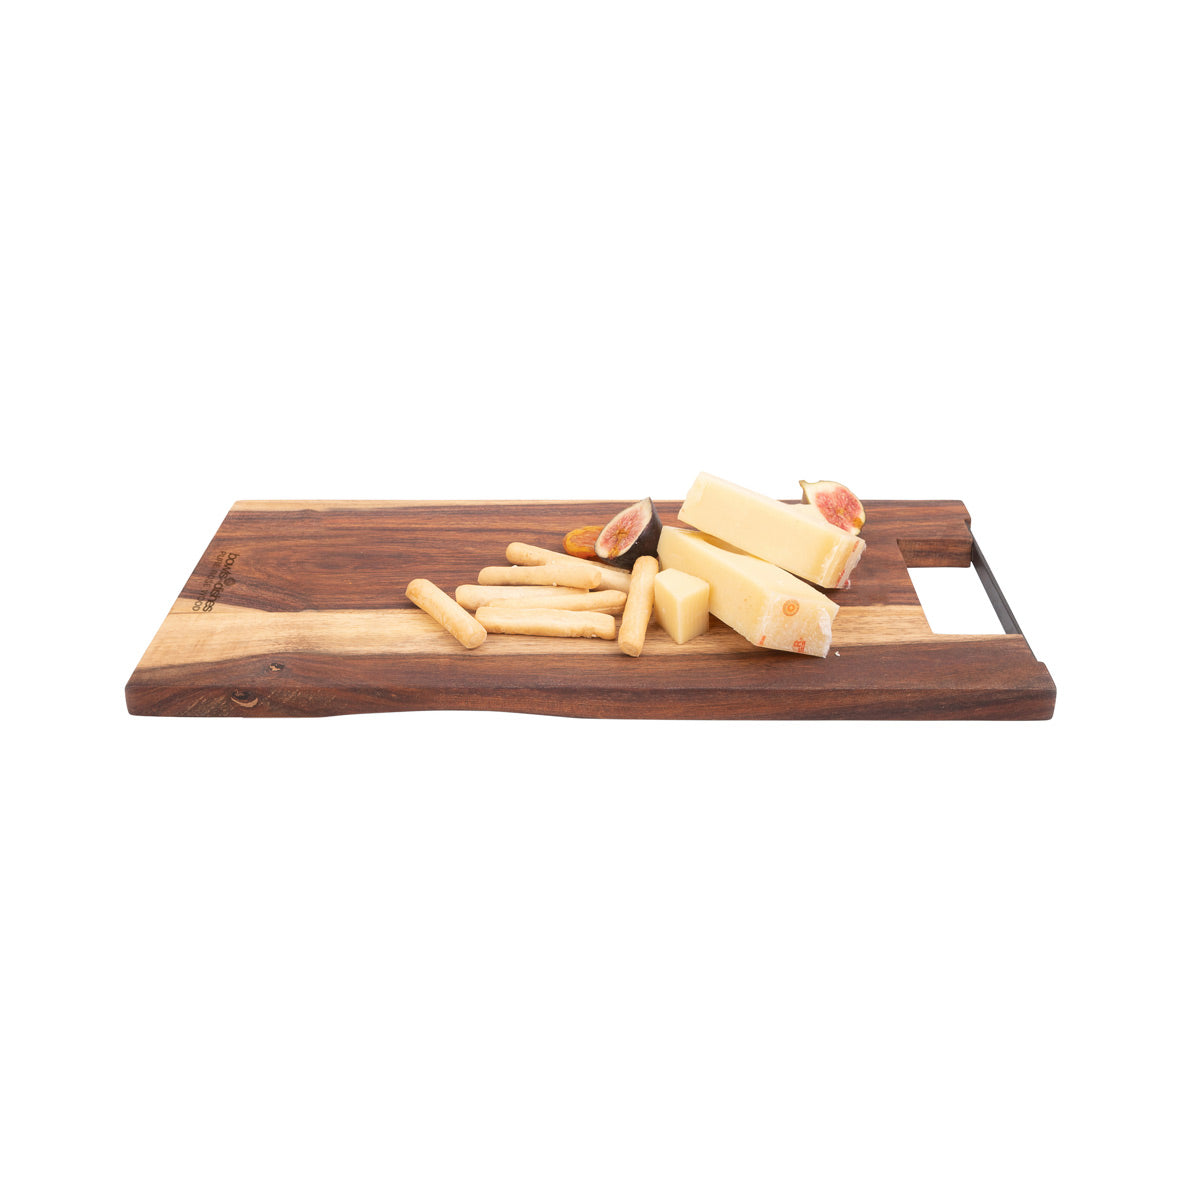 Bowls & Dishes Rose Wood serveerplank recht met metalen handvat - 39cm